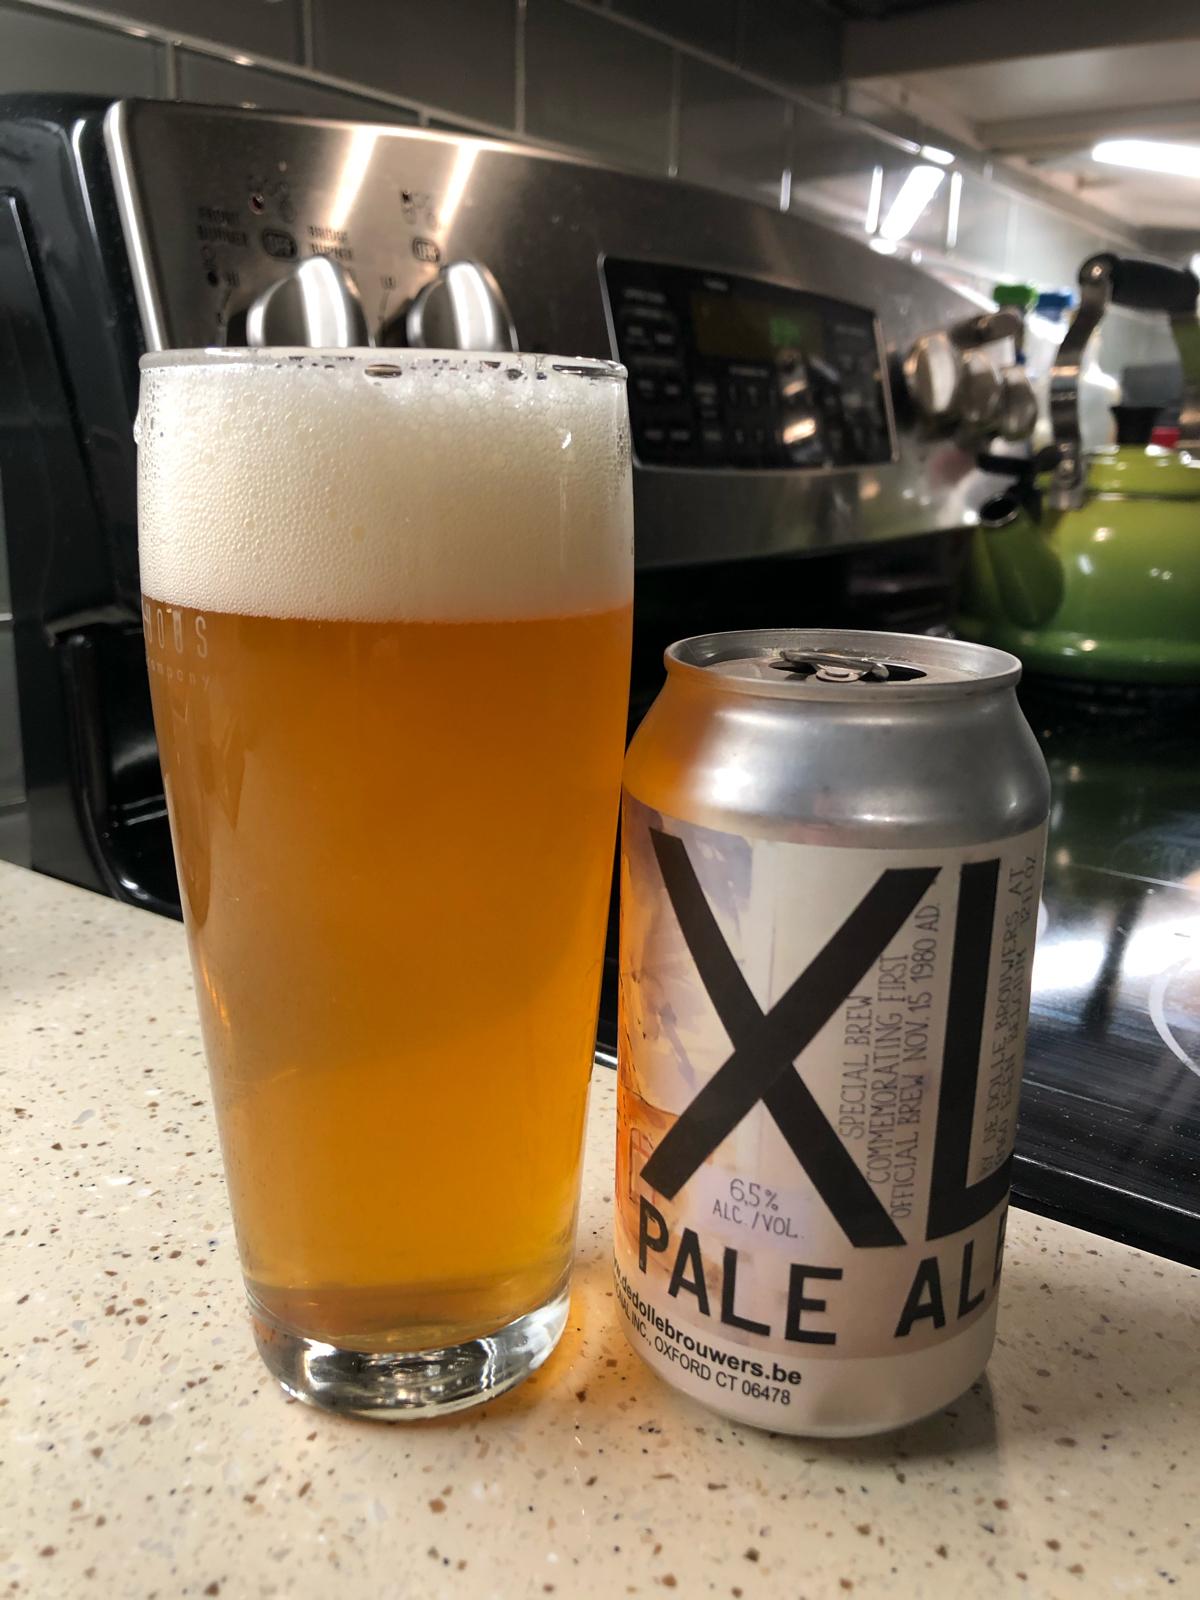 XL Pale Ale